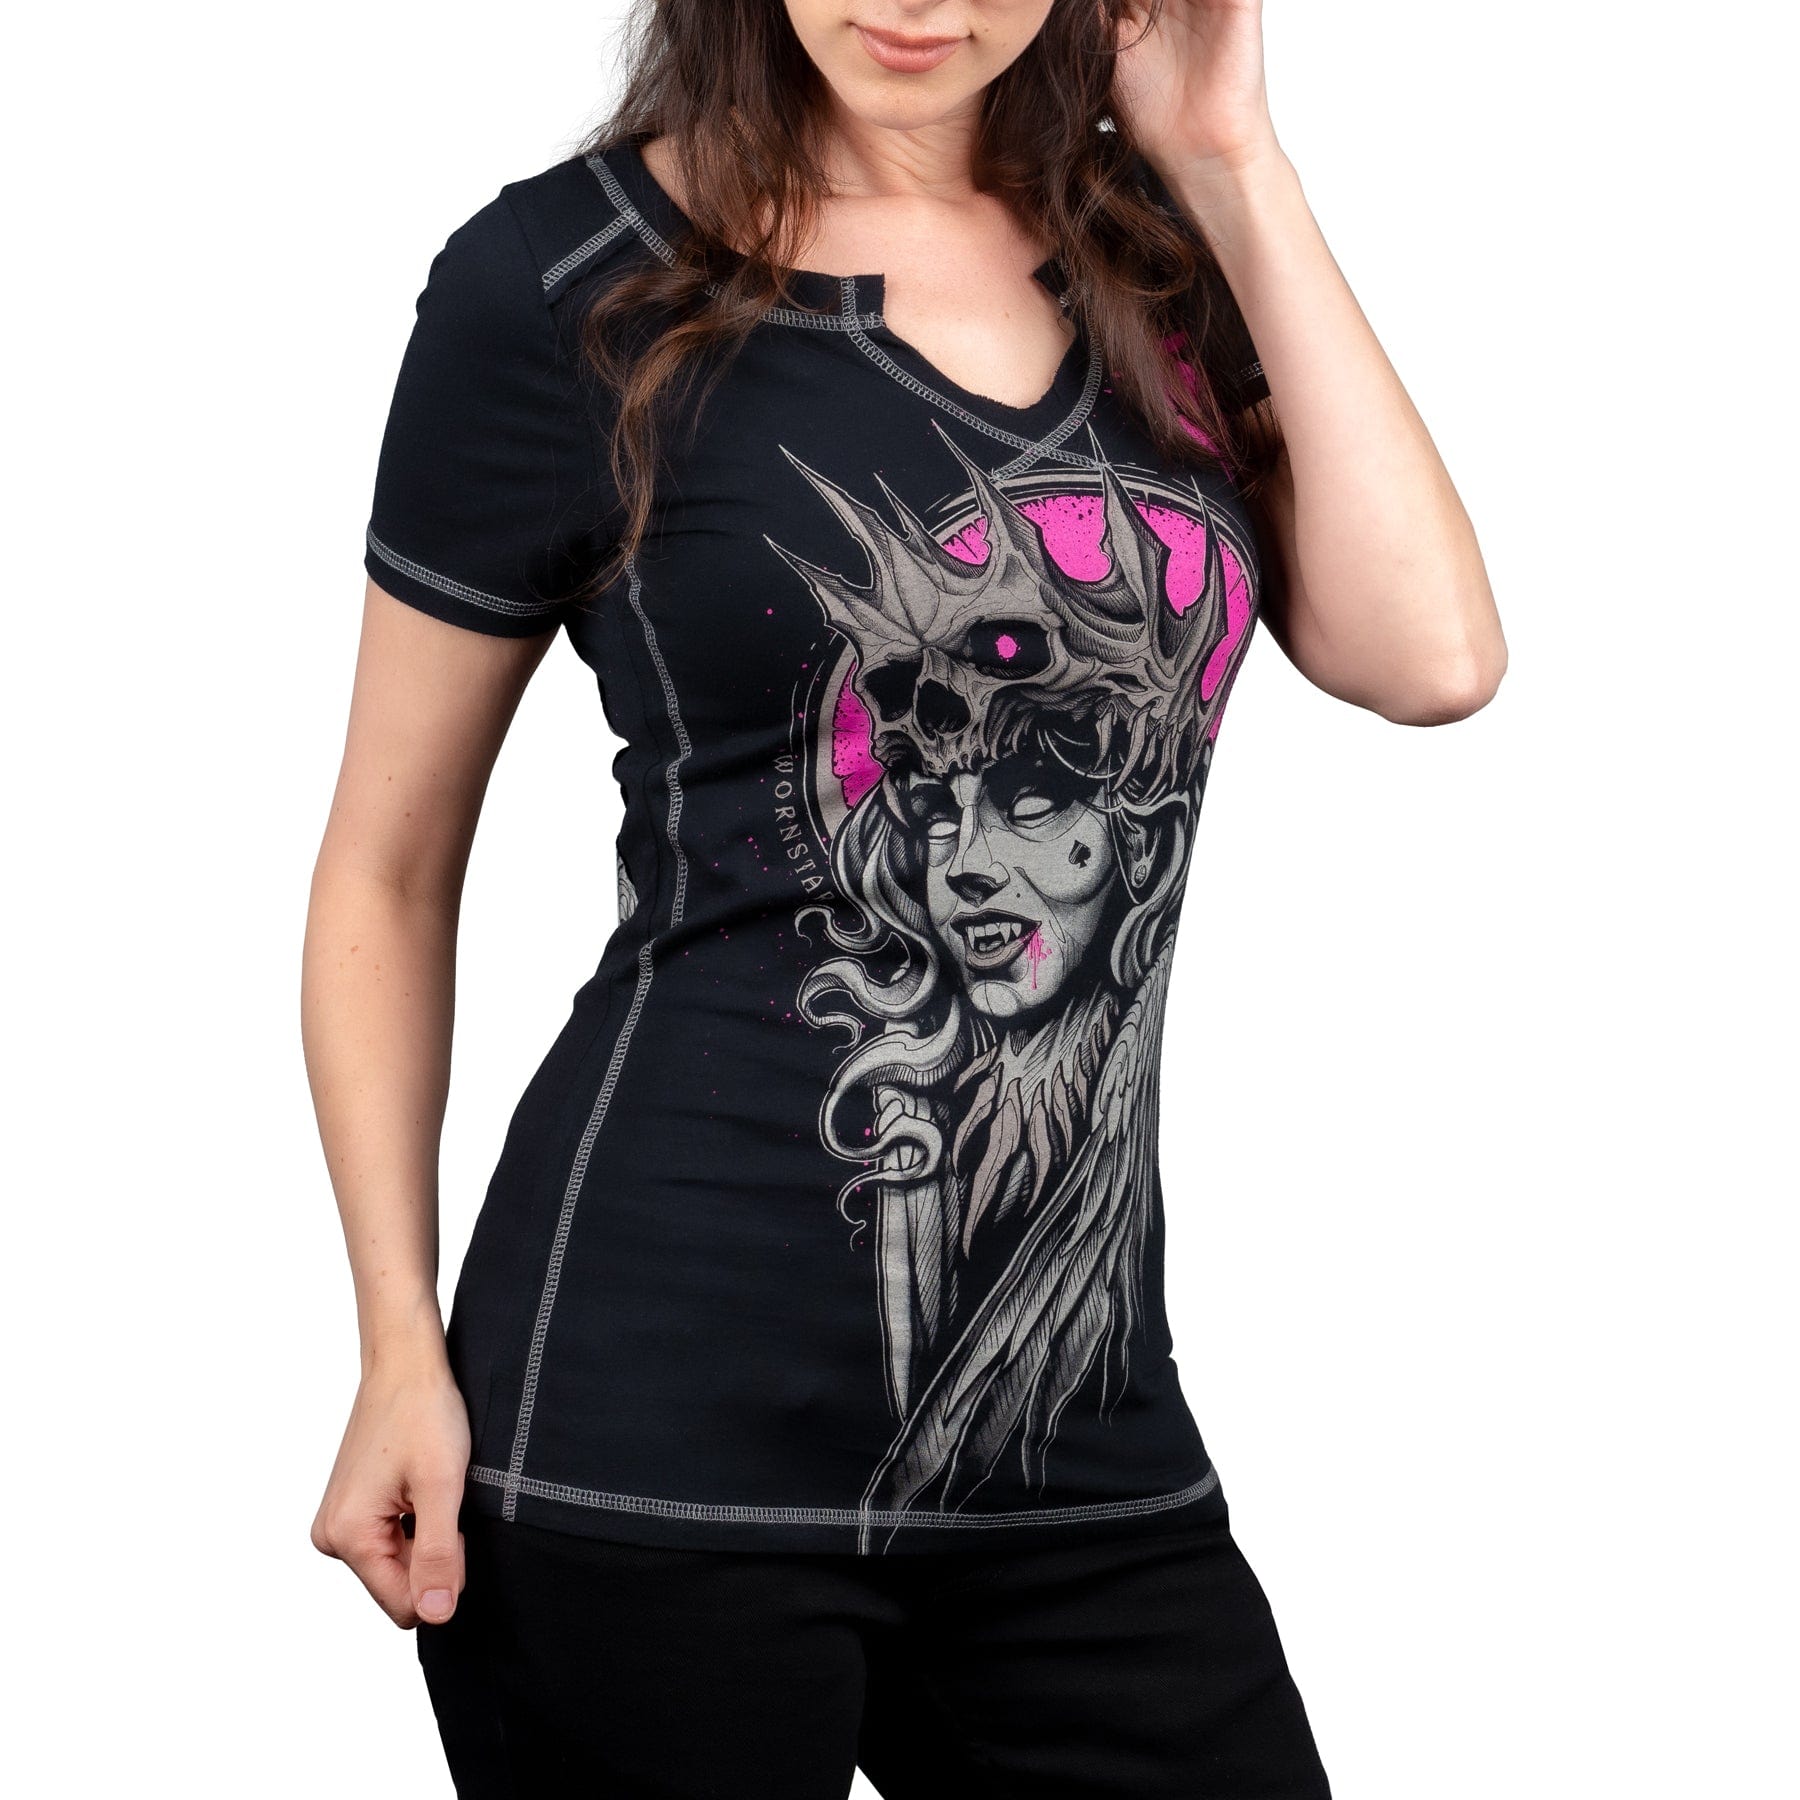 Wornstar Clothing Womens Tee Vampire Queen Skull T-shirt - Black